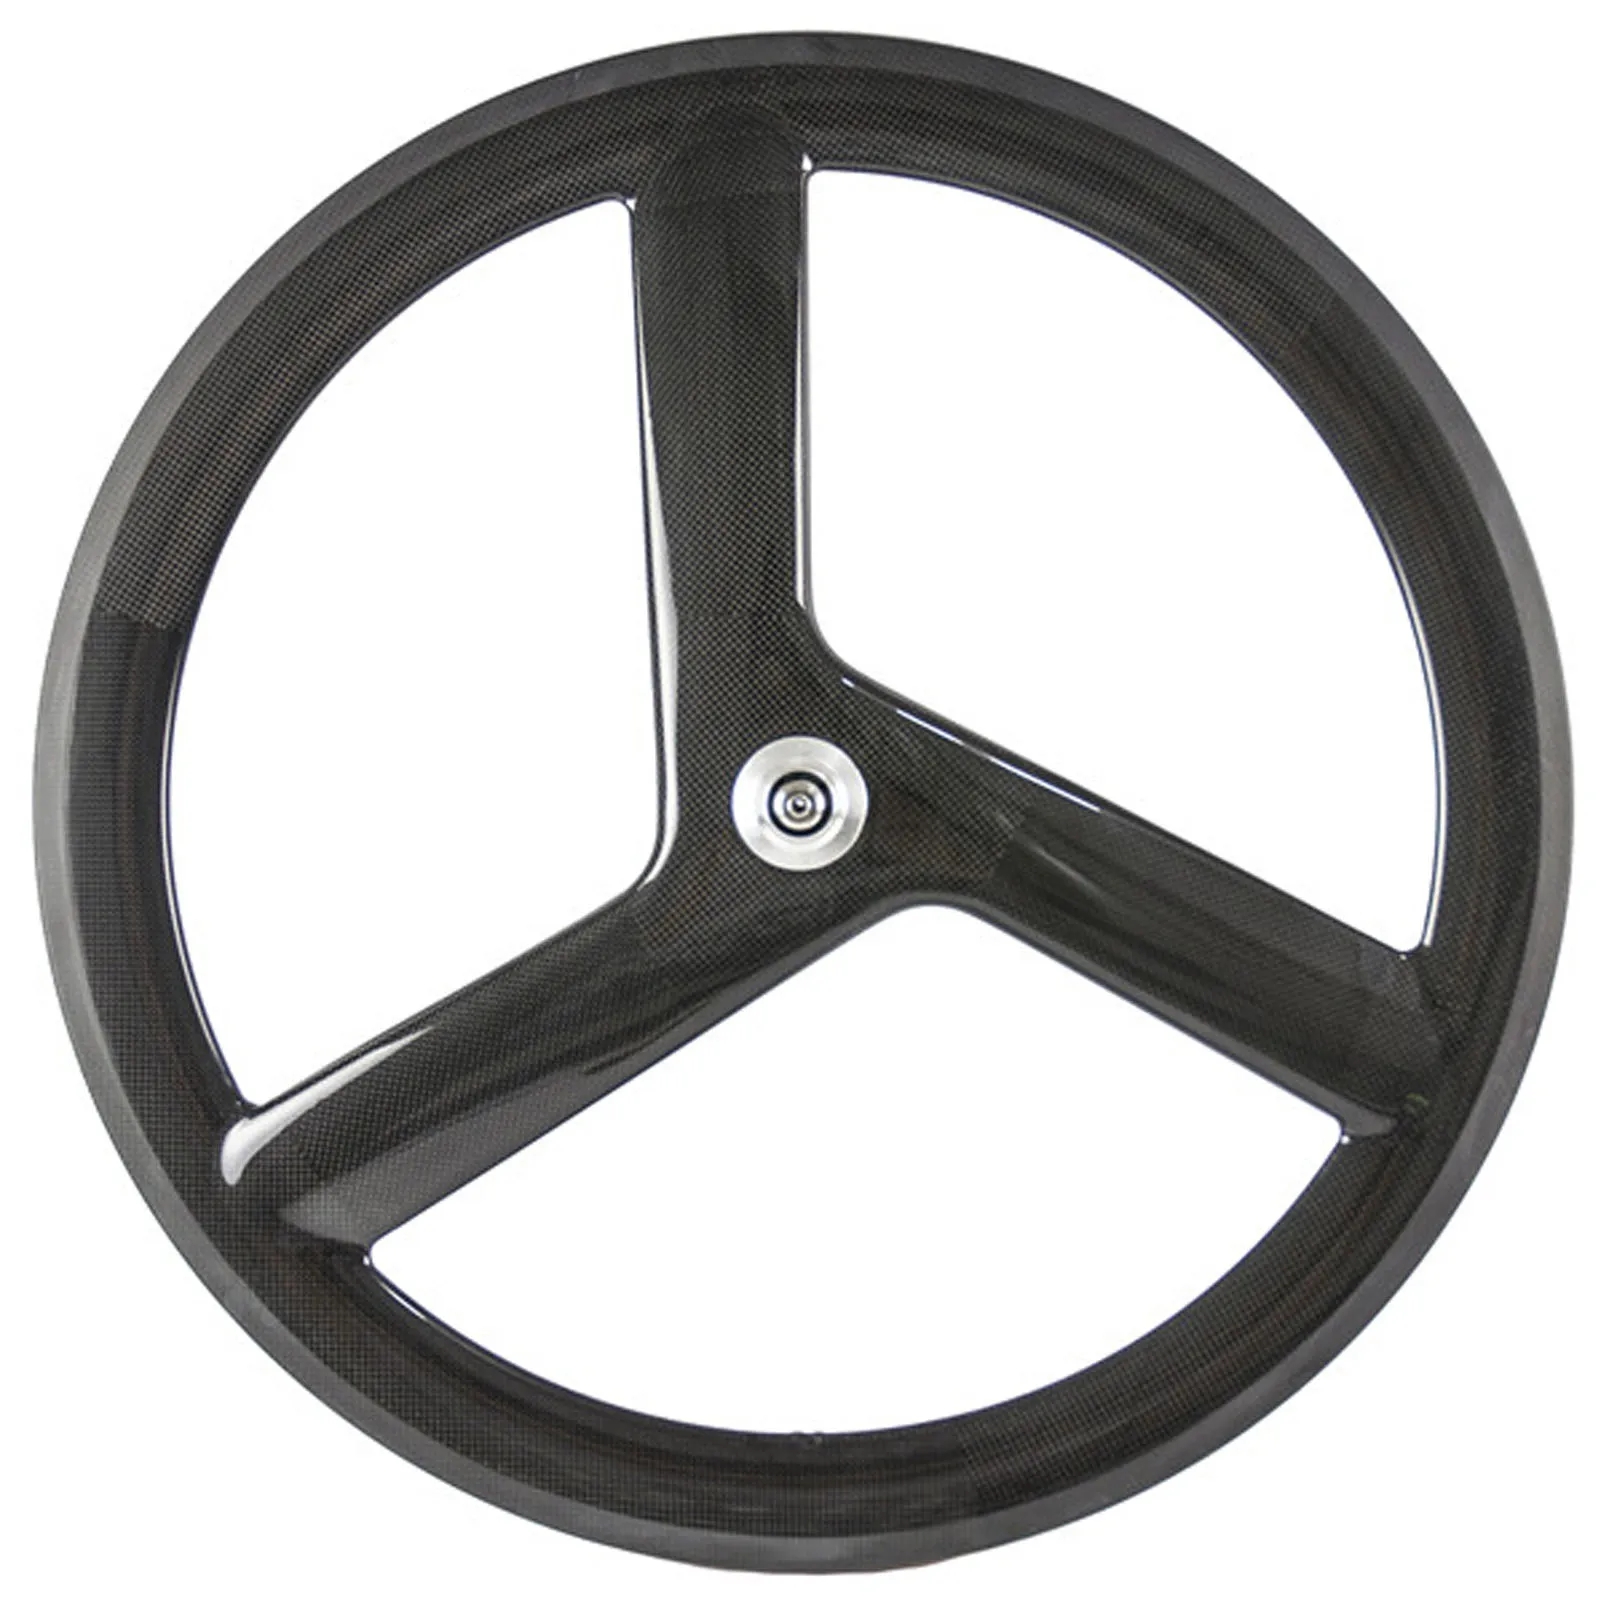 

TB2233 WINDX 3 Spoke Wheel 700C 56mm Tri Spoke Carbon Wheelset Clincher Fixed Gear Wheels, Black